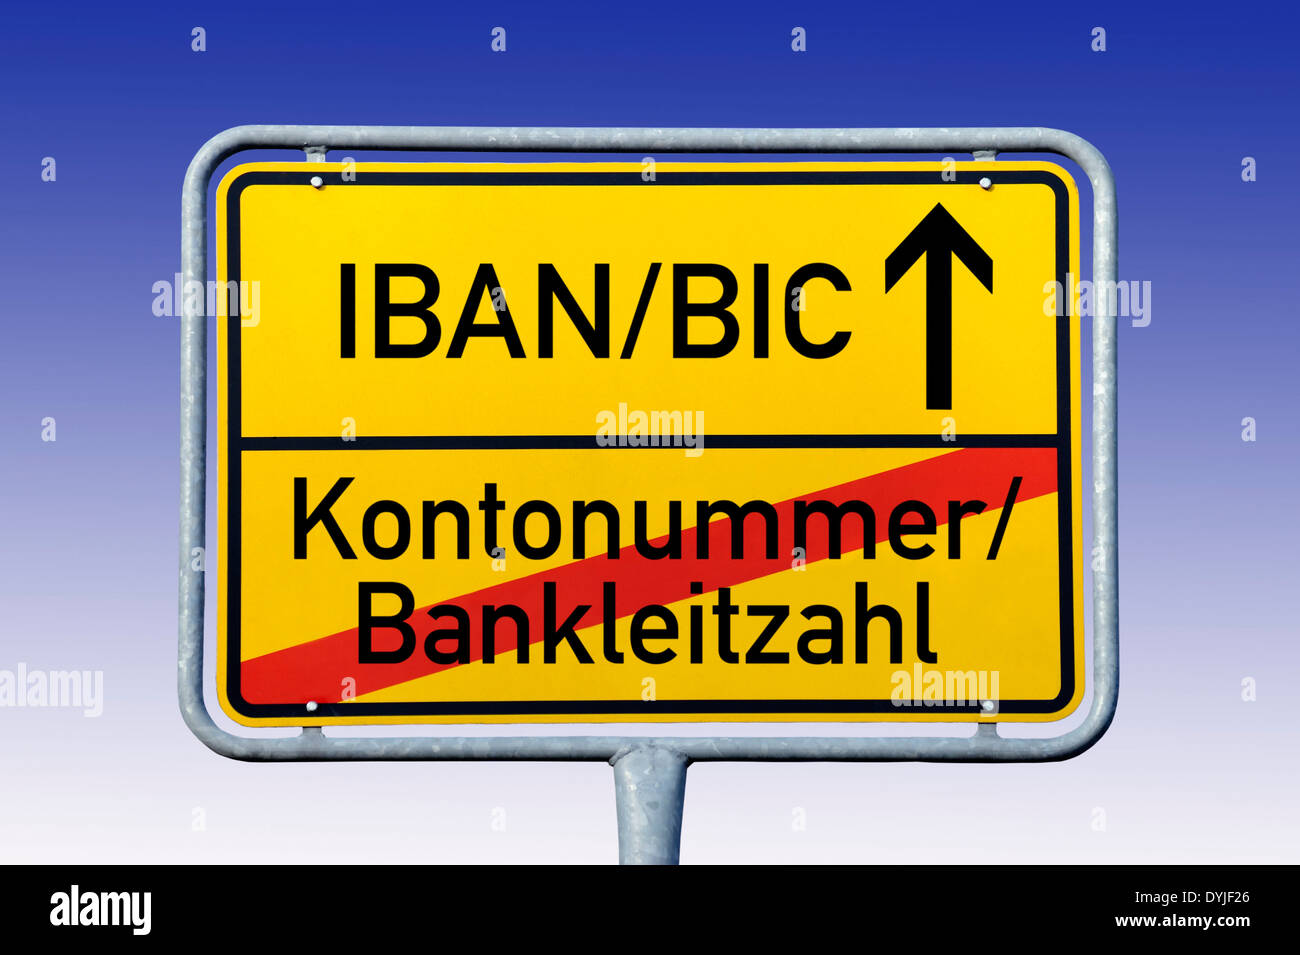 Ortsschild mit Aufschrift IBAN/BIC und Kontonummer/Bankleitzahl Stock Photo